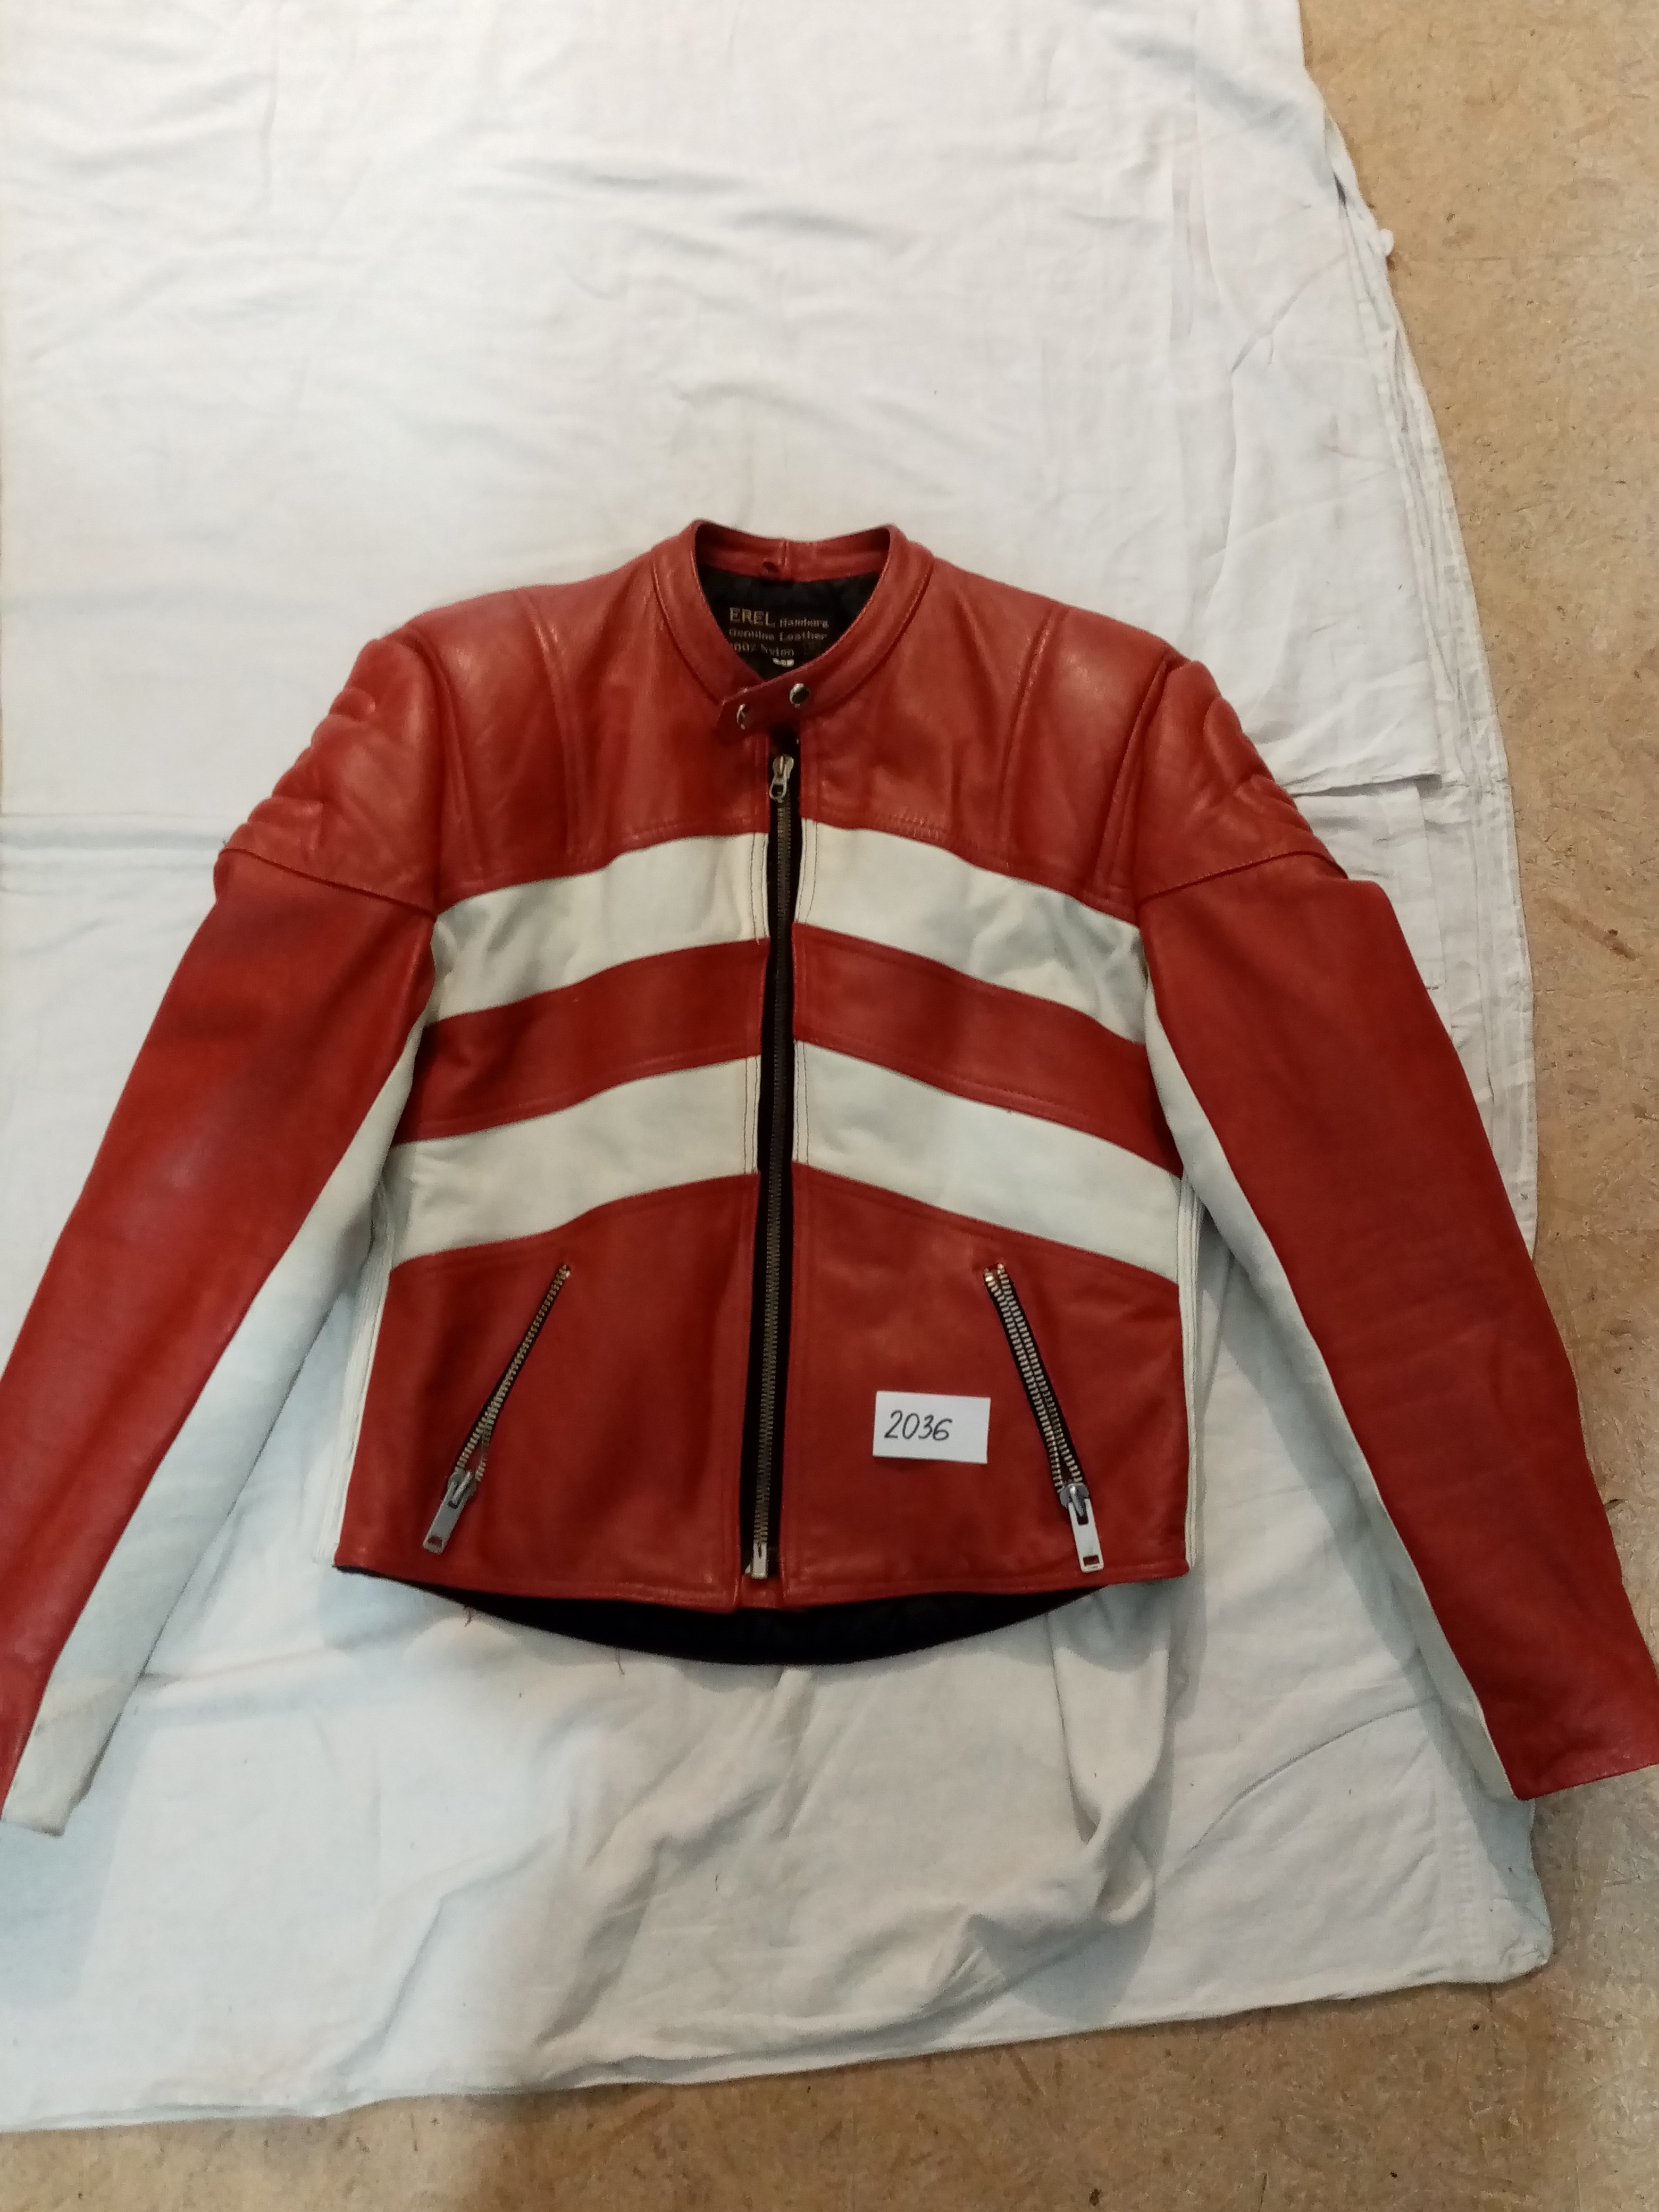 Moto kožená bunda EREL, červeno – bielej farby, veľ. 54, č.2036